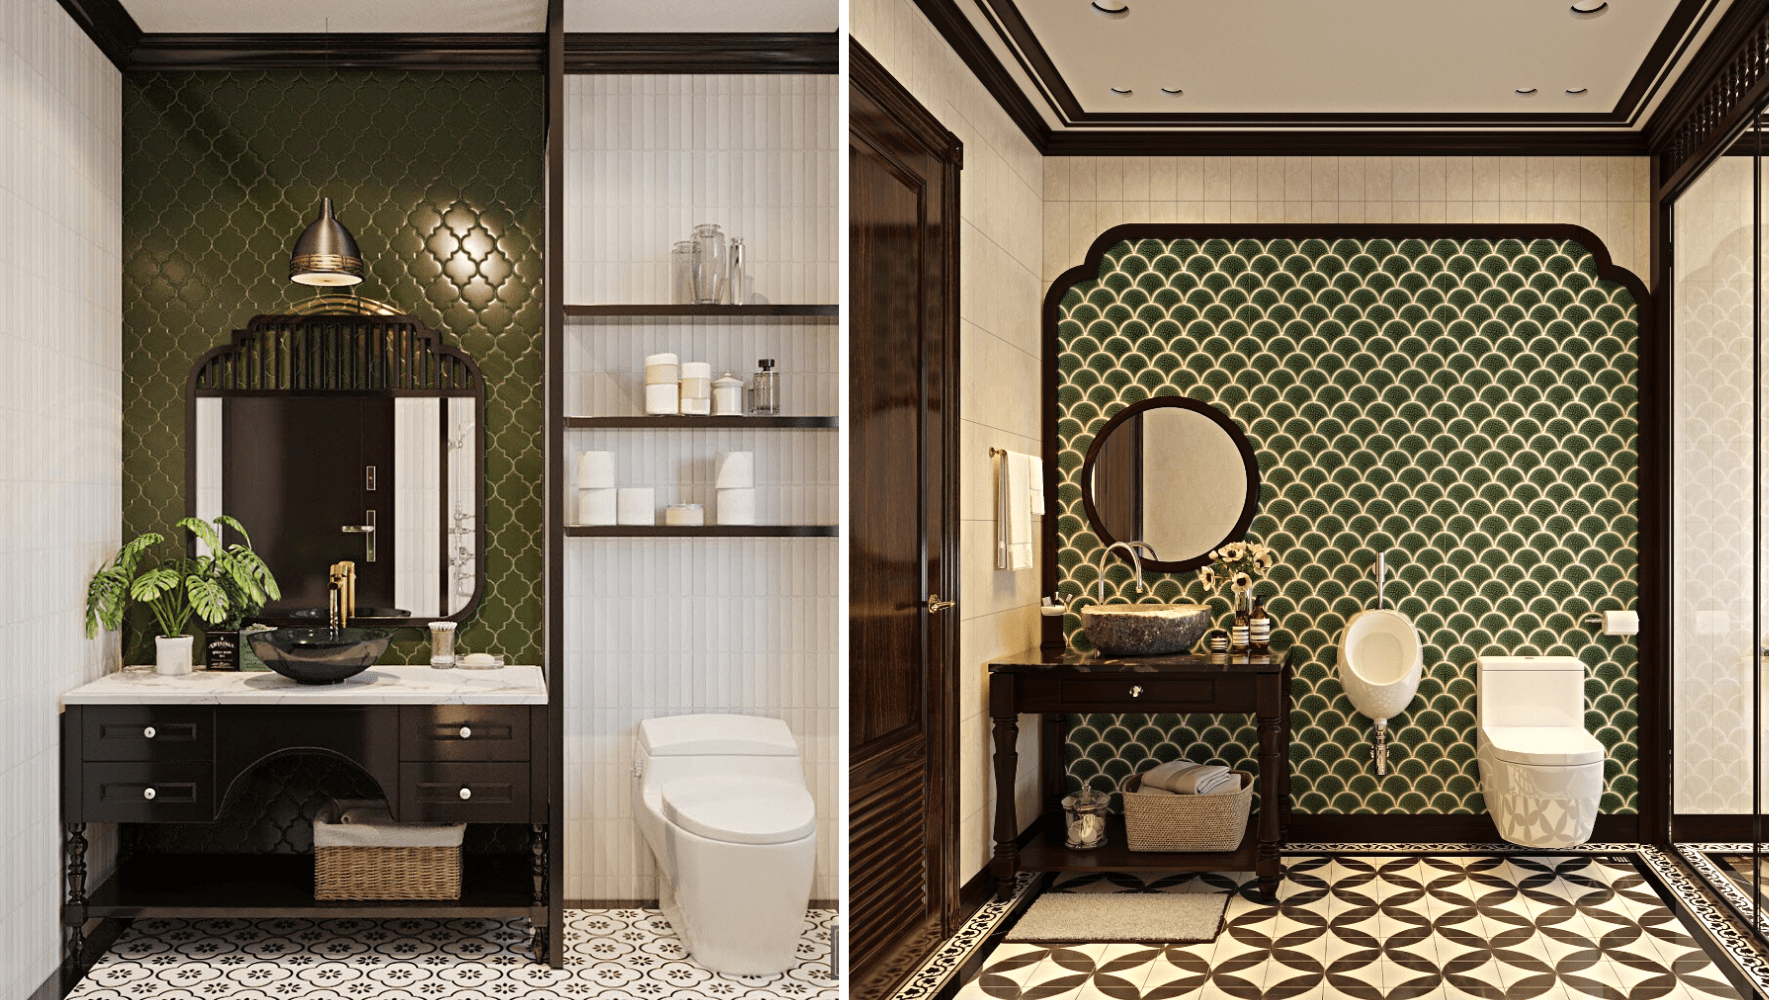 Các họa tiết trang trí đặc trưng phong cách Indochine tại phòng tắm 